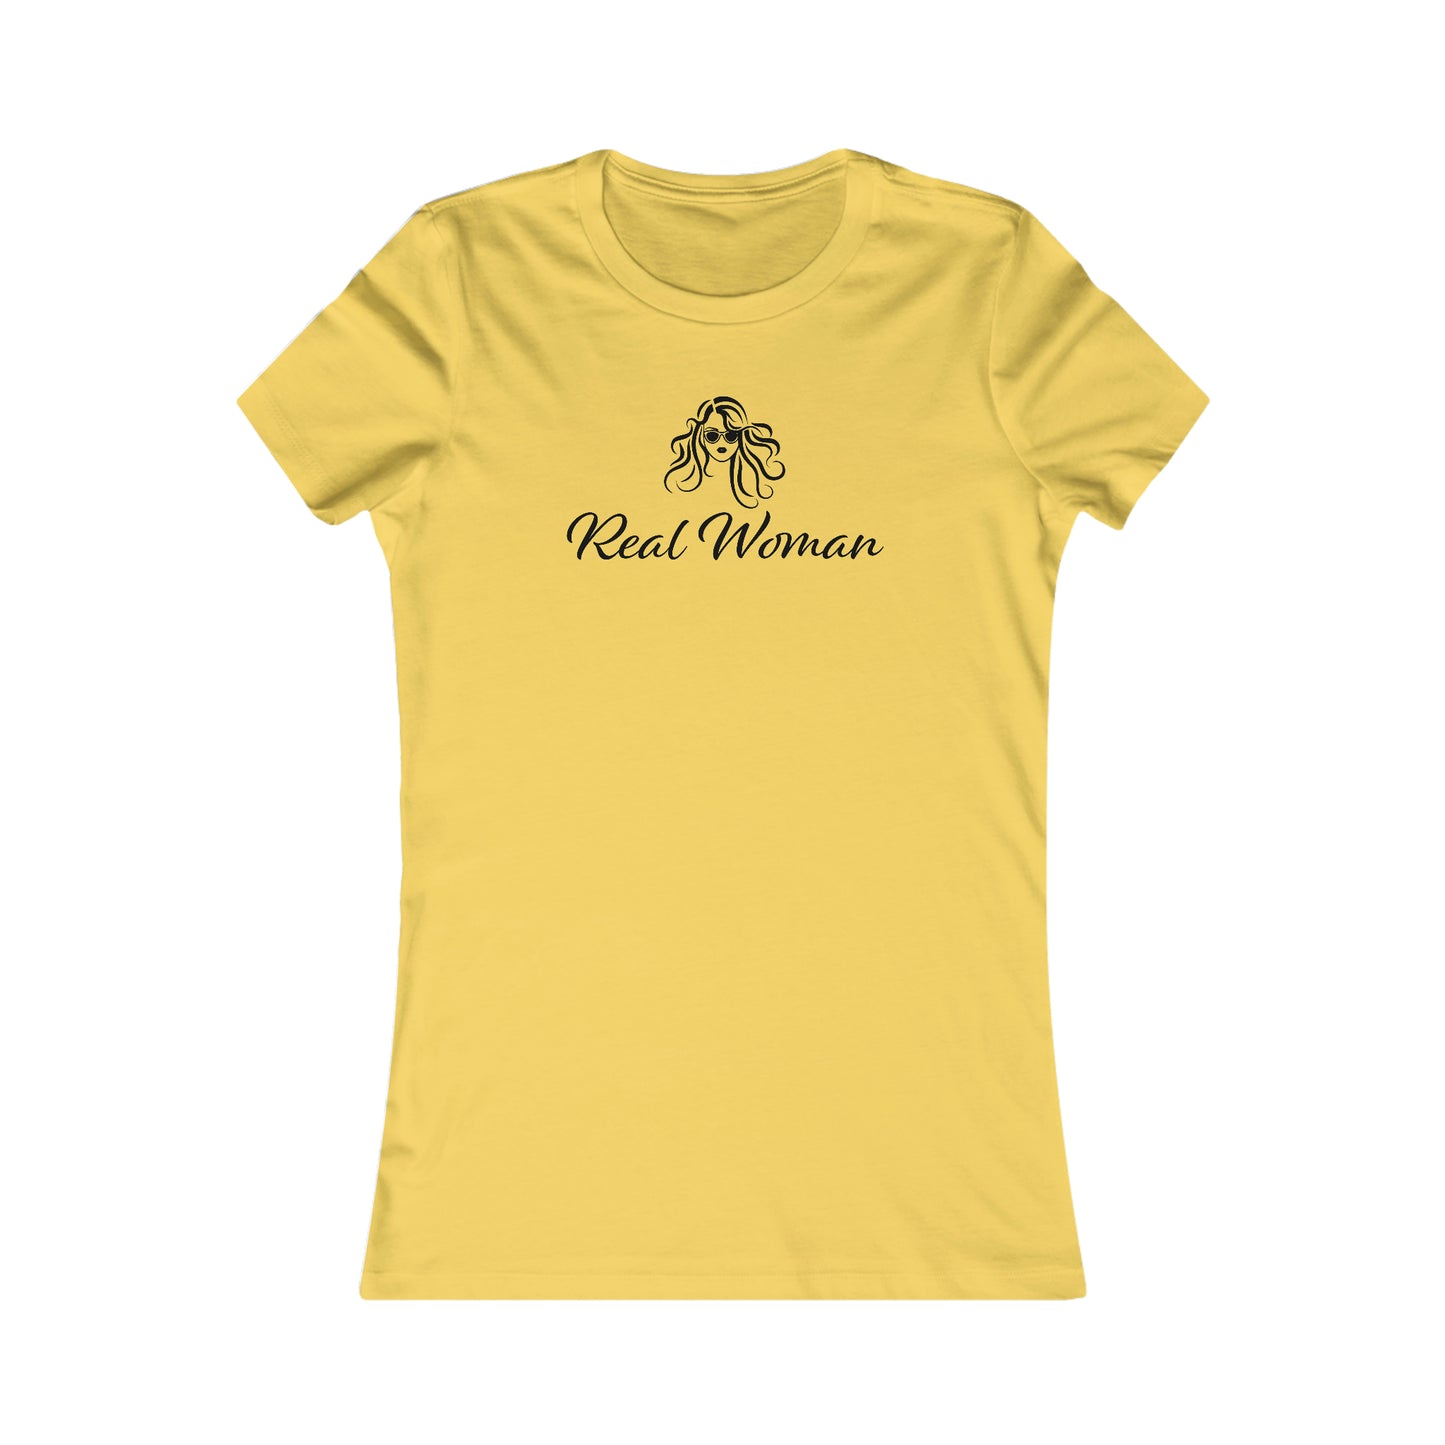 Real Woman T-Shirt For Genuine Woman TShirt For Women Aren't Men T Shirt For Ladies Shirt For Gift For Woman TShirt for Mother's Day Gift For Mom